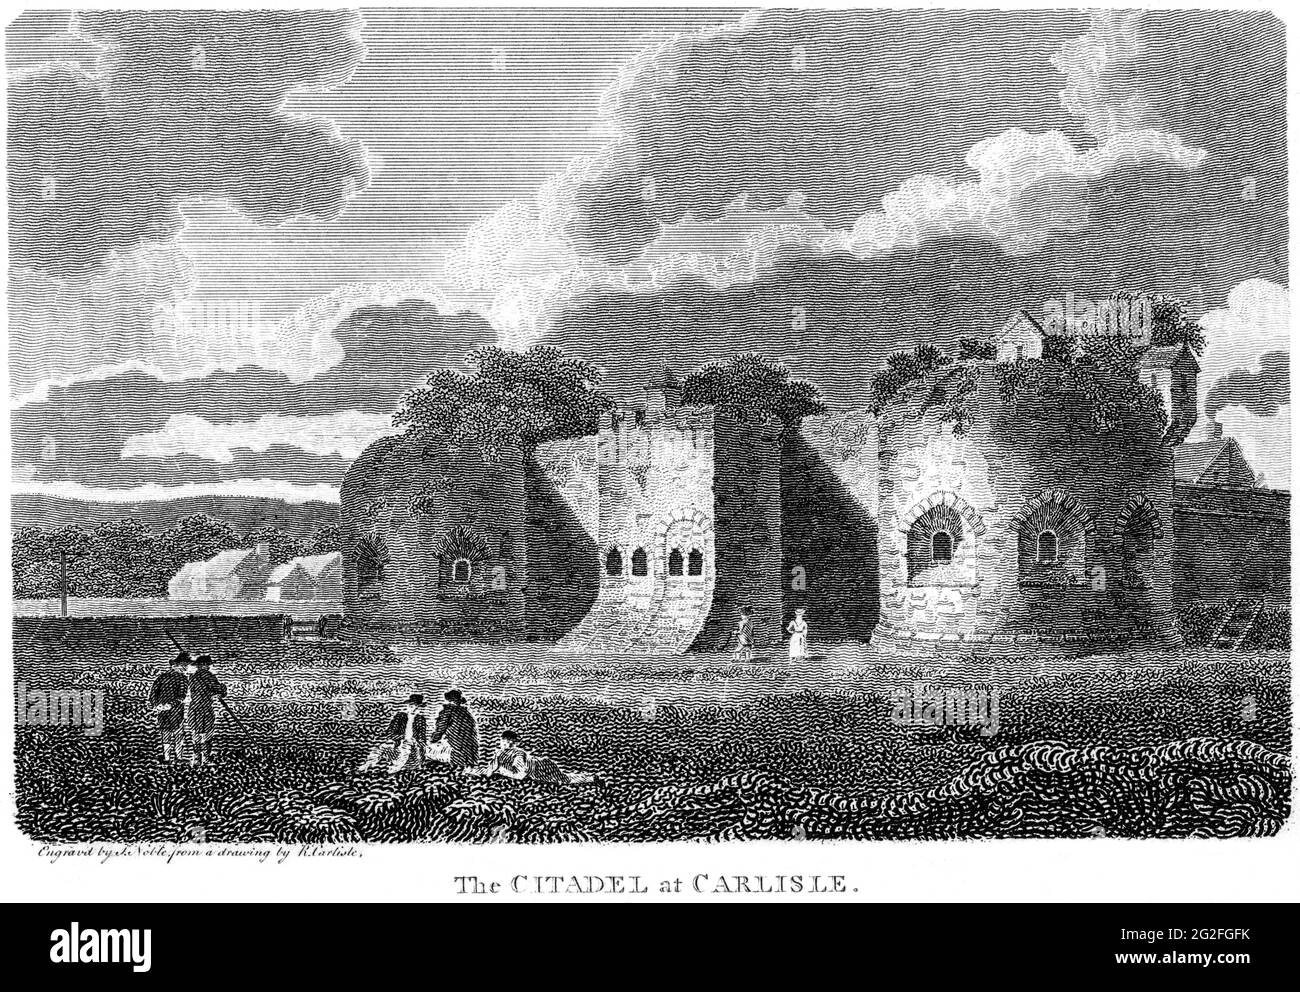 Ein Stich der Zitadelle von Carlisle, Cumberland, gescannt in hoher Auflösung aus einem Buch, das 1812 gedruckt wurde. Für urheberrechtlich frei gehalten. Stockfoto